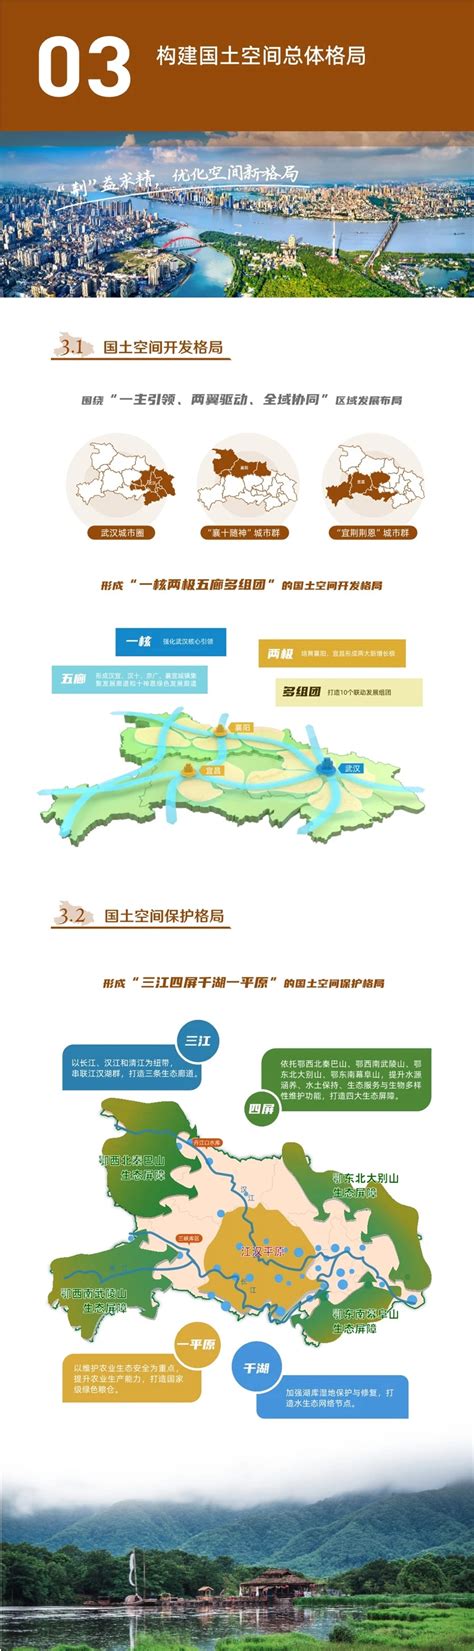 《湖北省国土空间规划（2021—2035年）》公示进行中-武汉大学中国发展战略与规划研究院